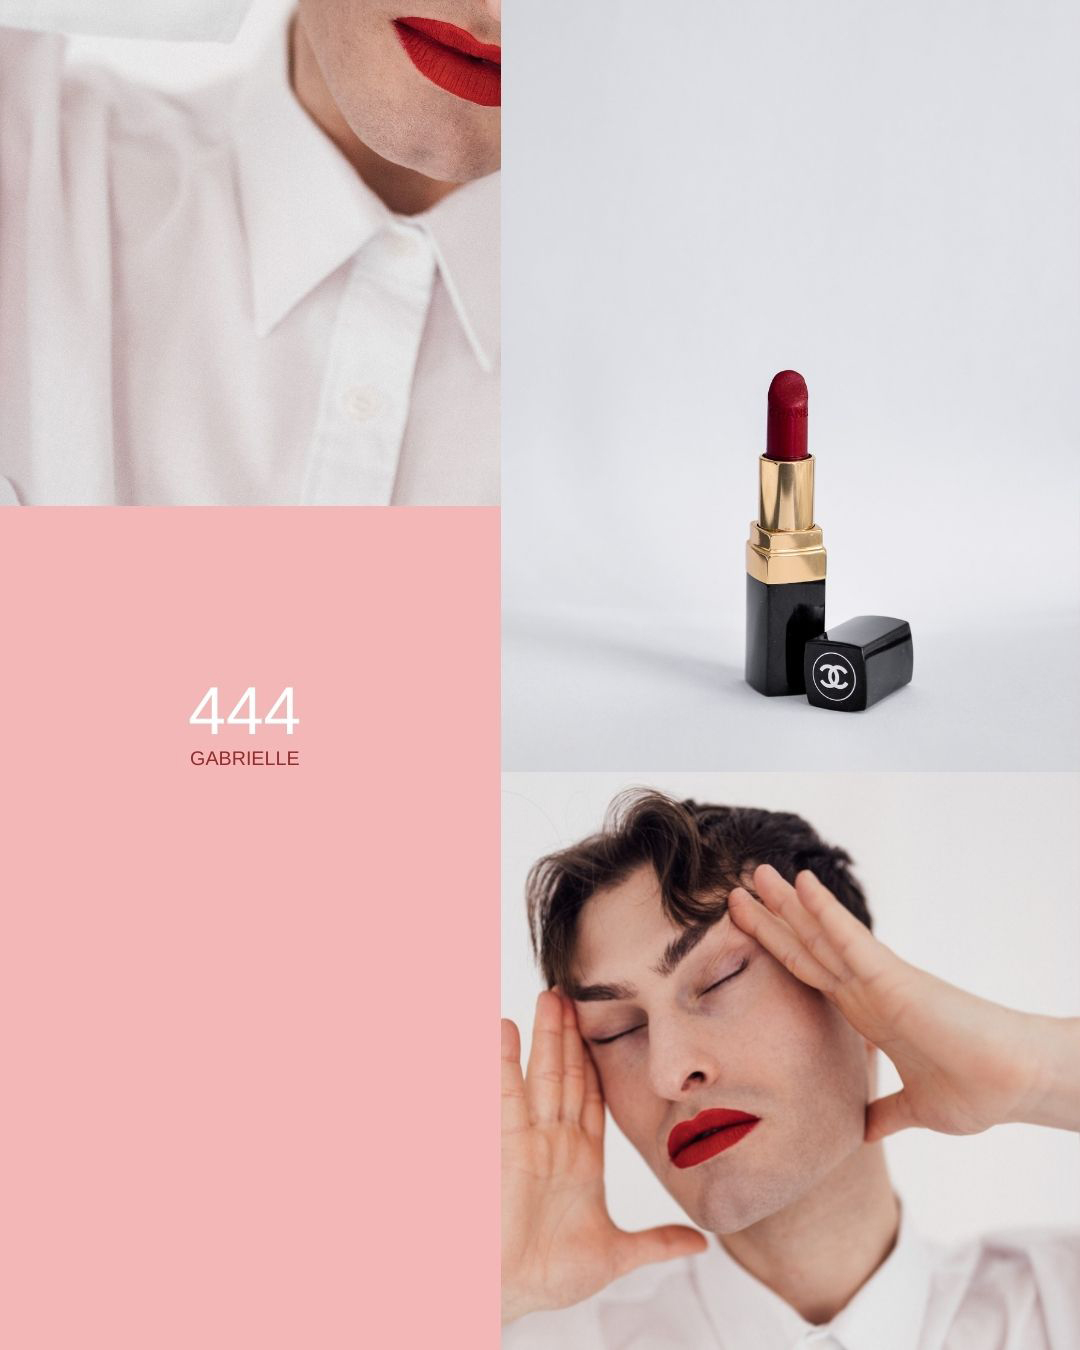 Lippenstift von Chanel in der Farbe Rot für Männer.